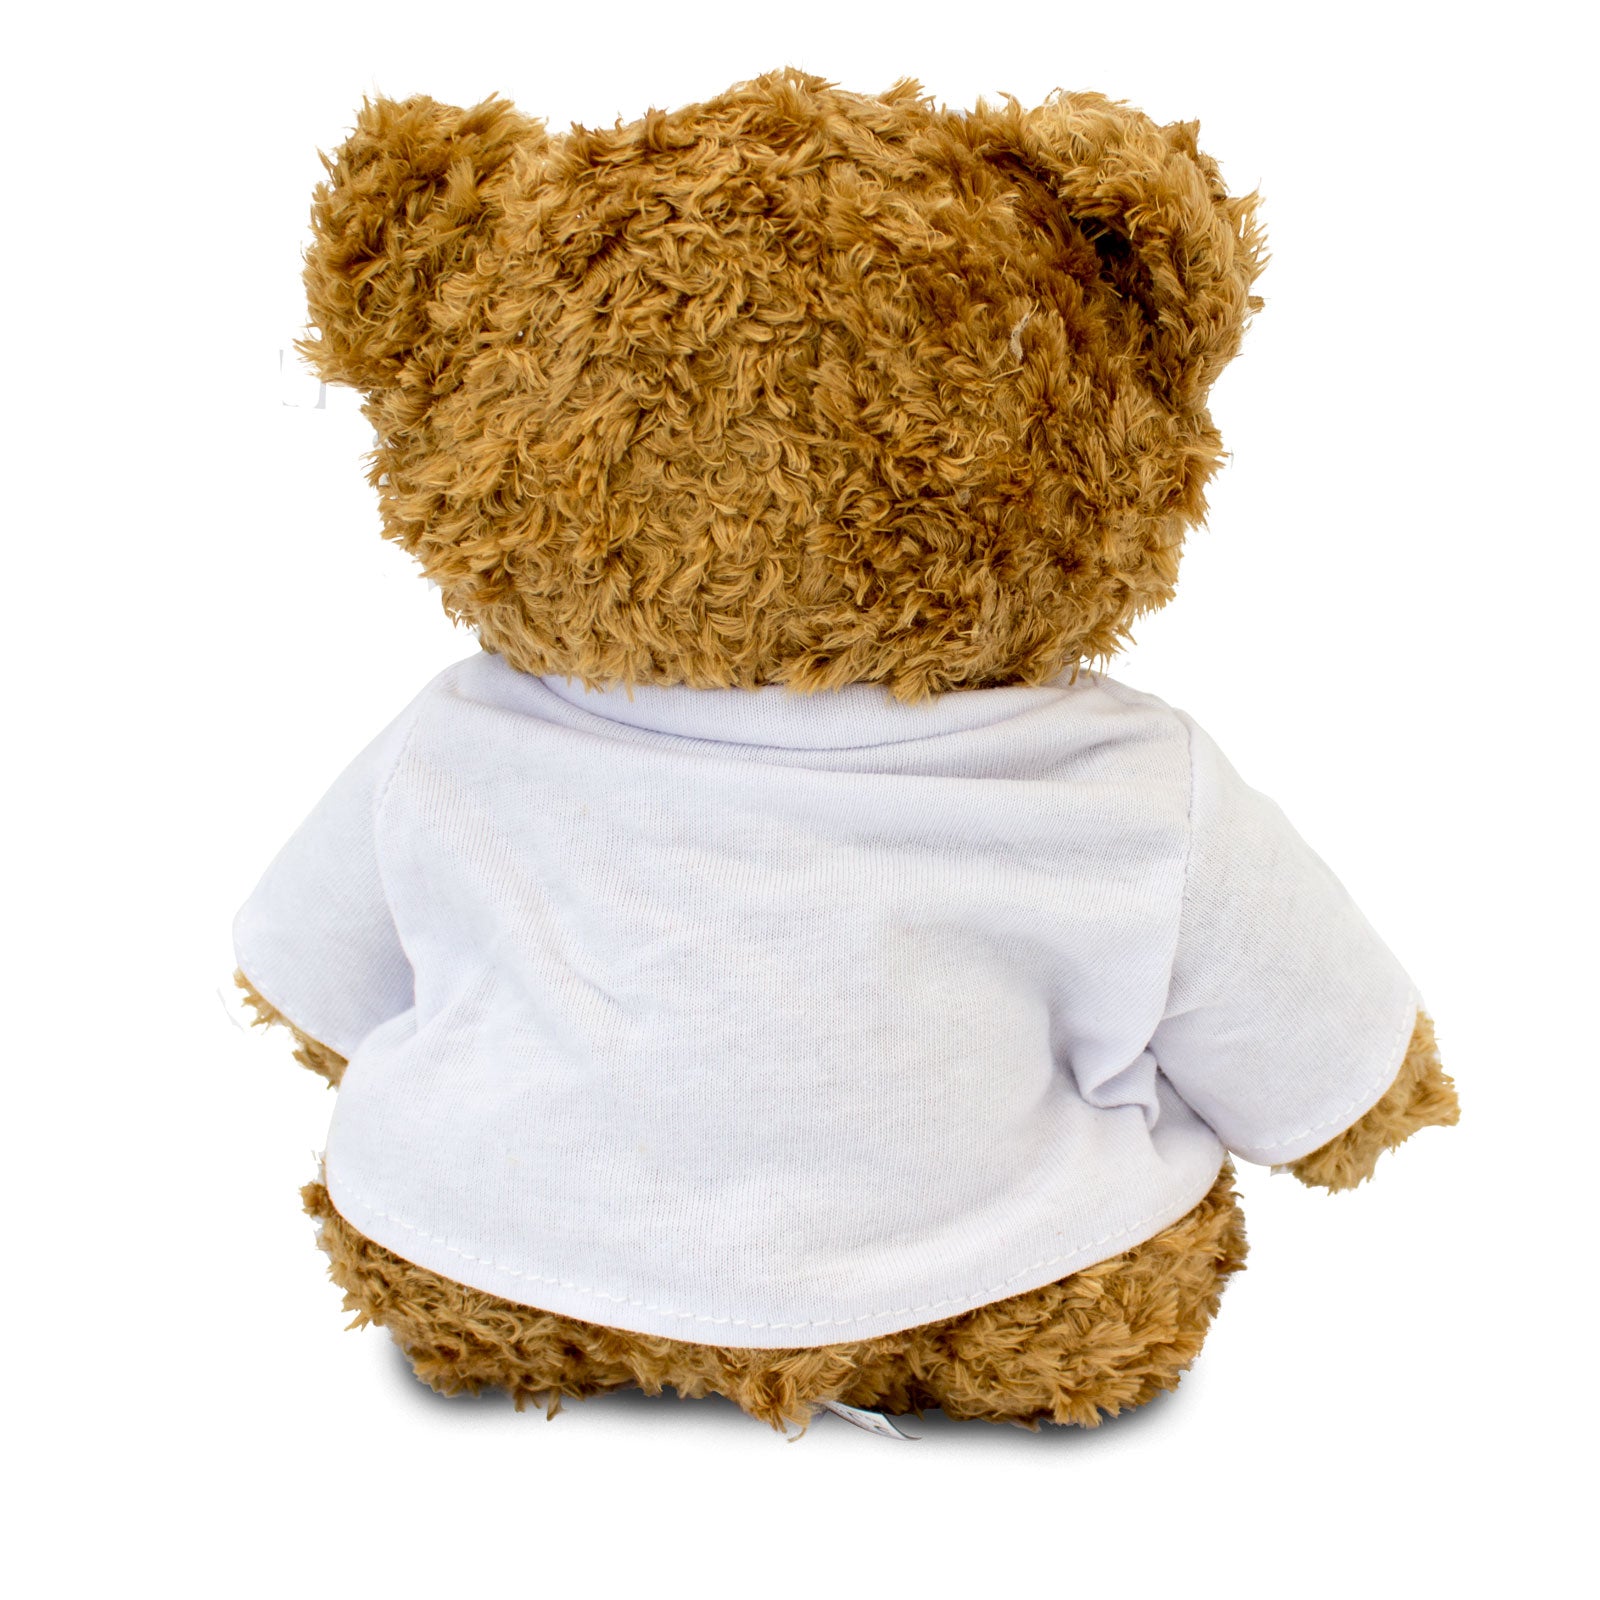 I Love Xmas - Teddy Bear